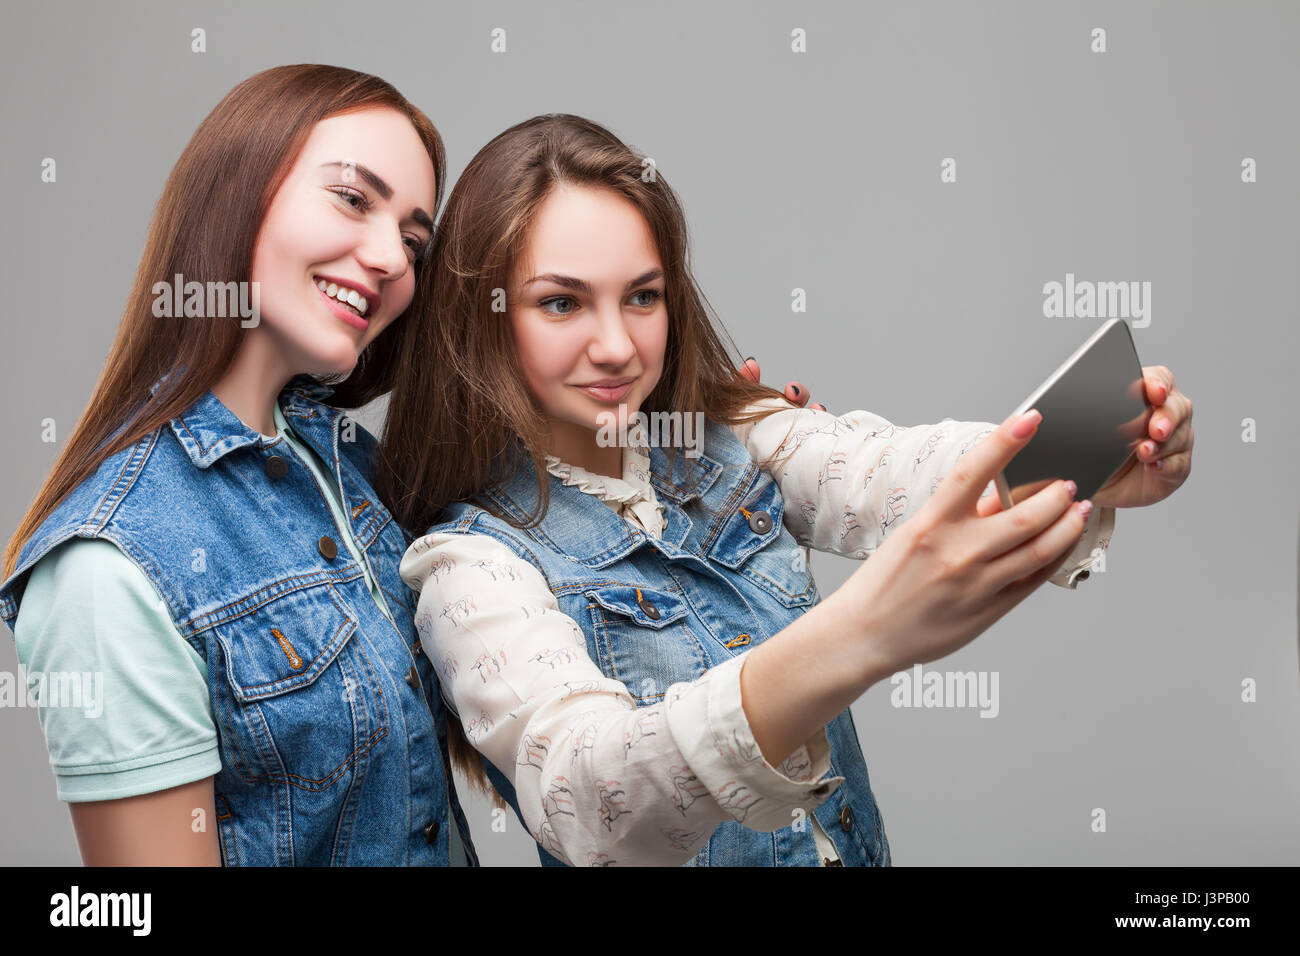 Due ragazze sorridenti in giacche denum rende selfie sulla fotocamera del telefono in studio. Amicizia femminile. Tempo libero di felice ragazze Foto Stock